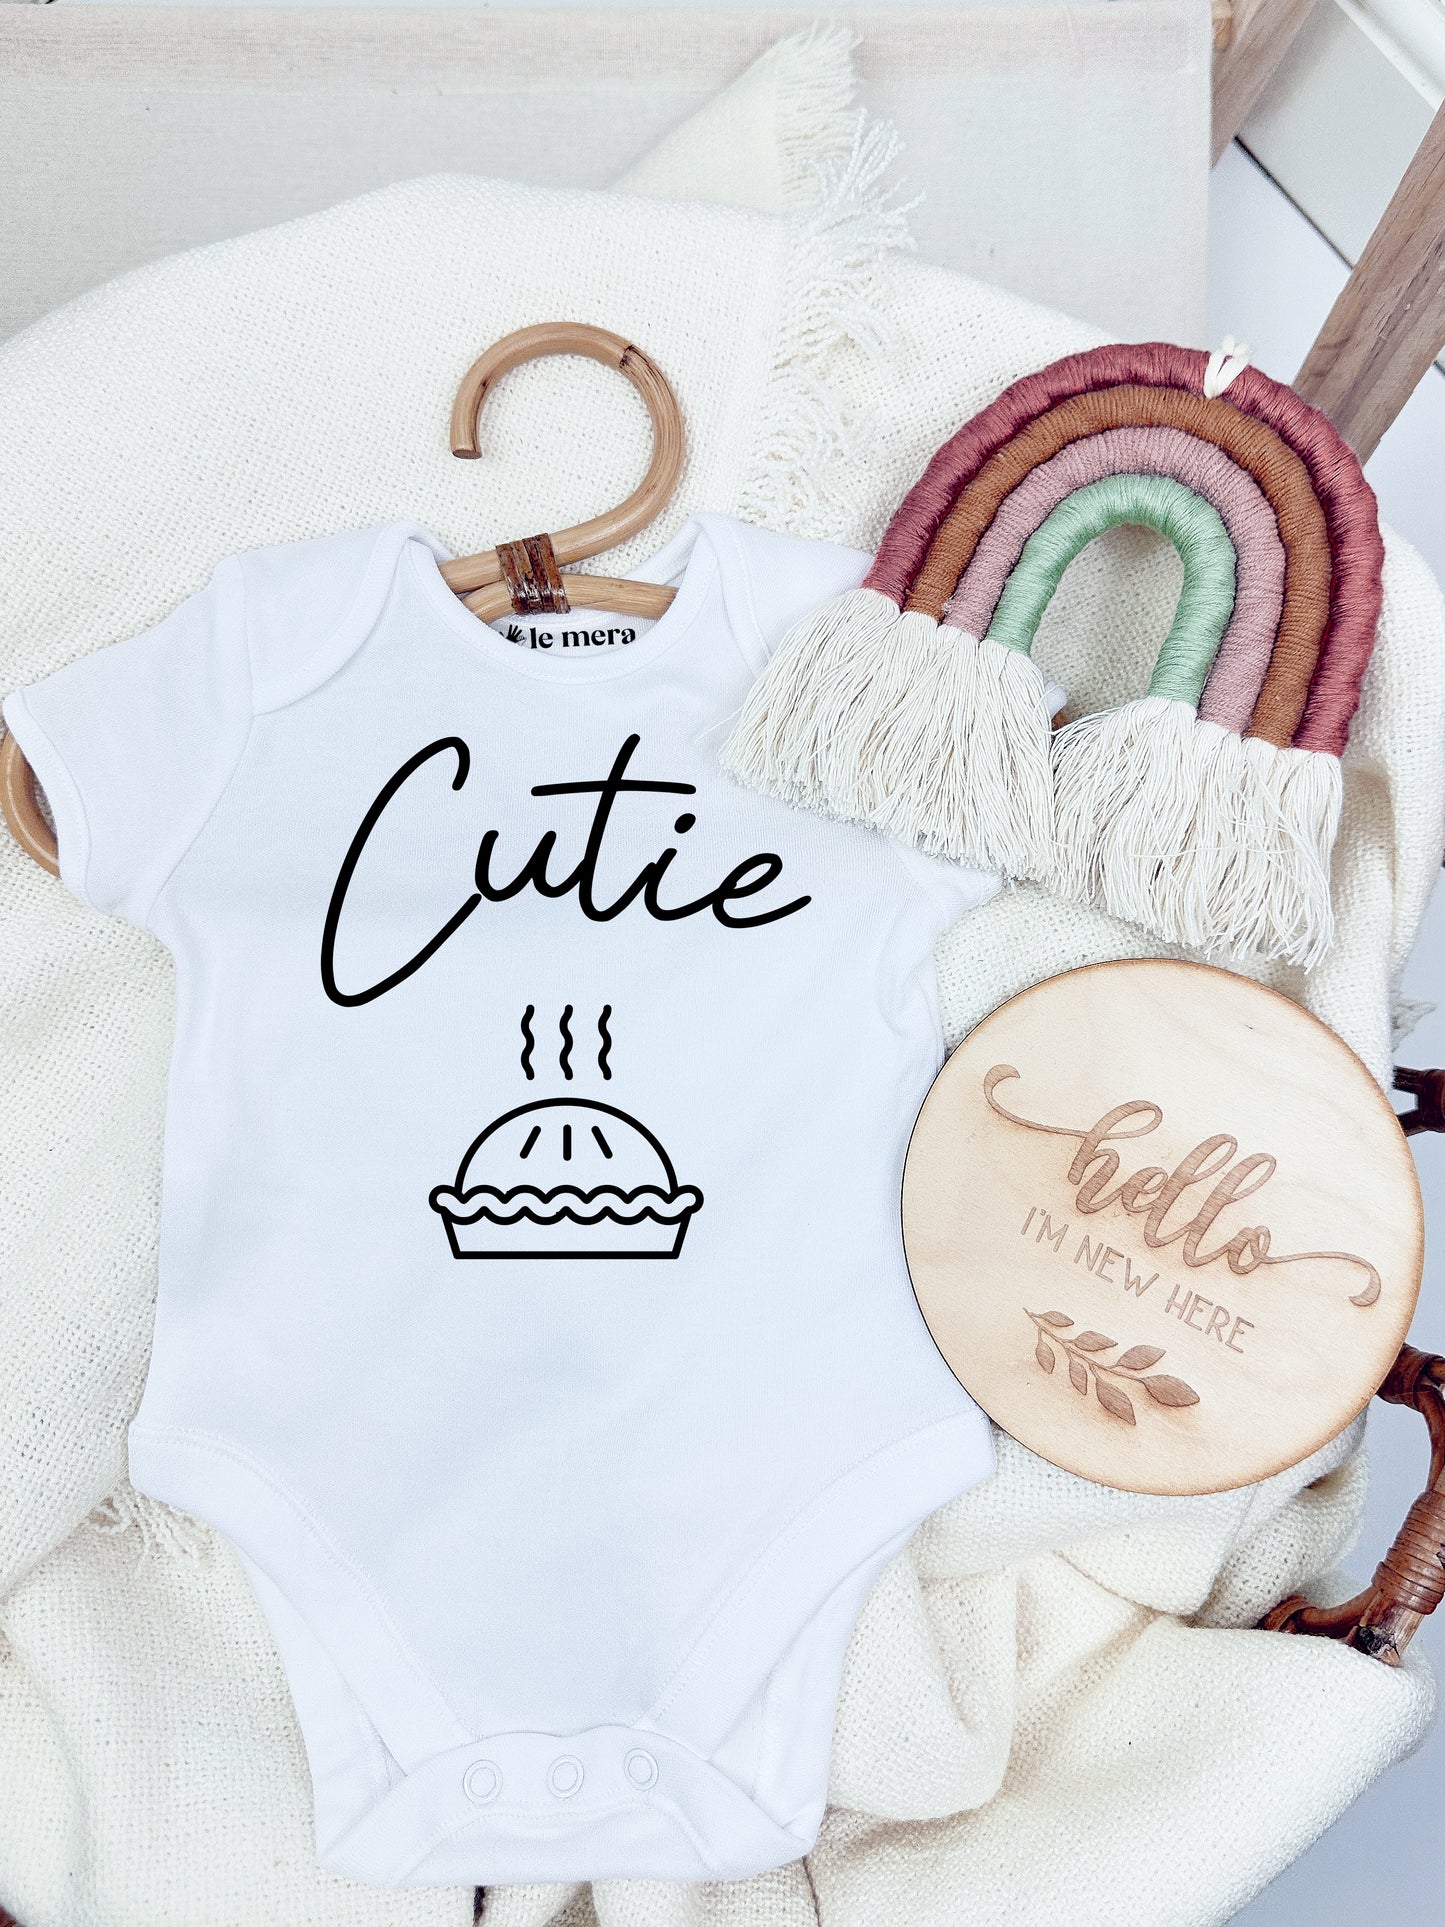 Cutie Pie Baby Vest, Baby Grow, Food Baby Baby Vest, Baby Grow